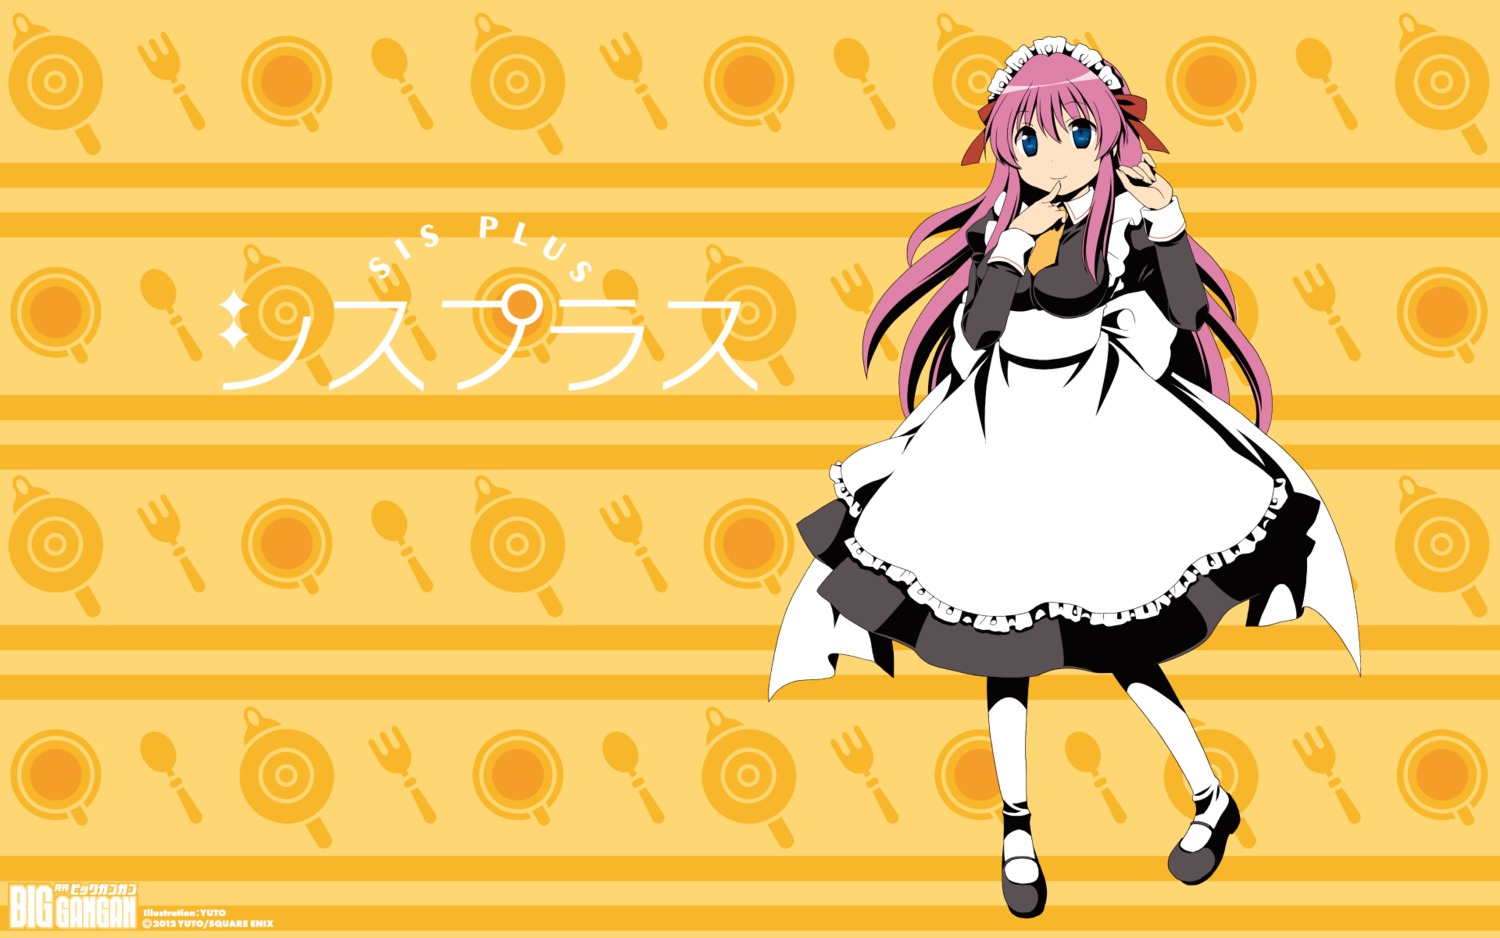 maid sis_plus wallpaper yuuto_(mangaka)